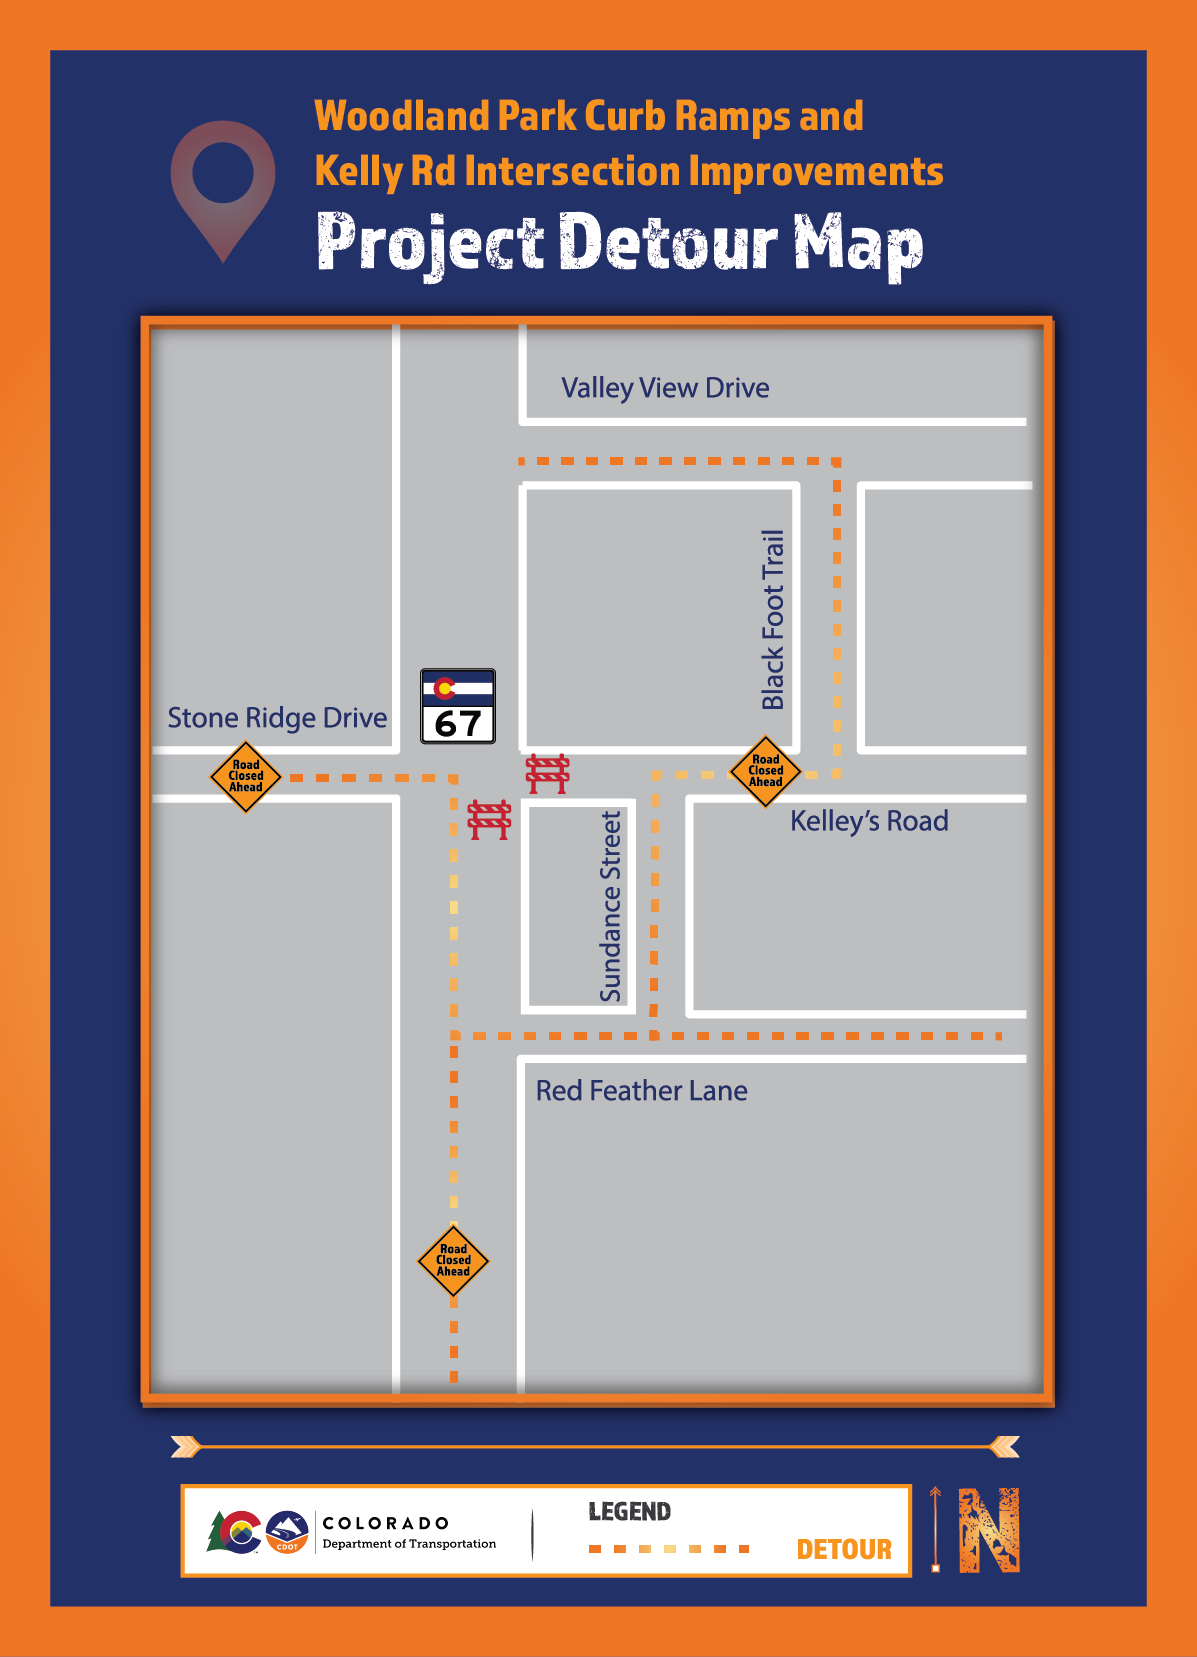 Woodland Park Detour Map 4.1.2021-01-01.png detail image